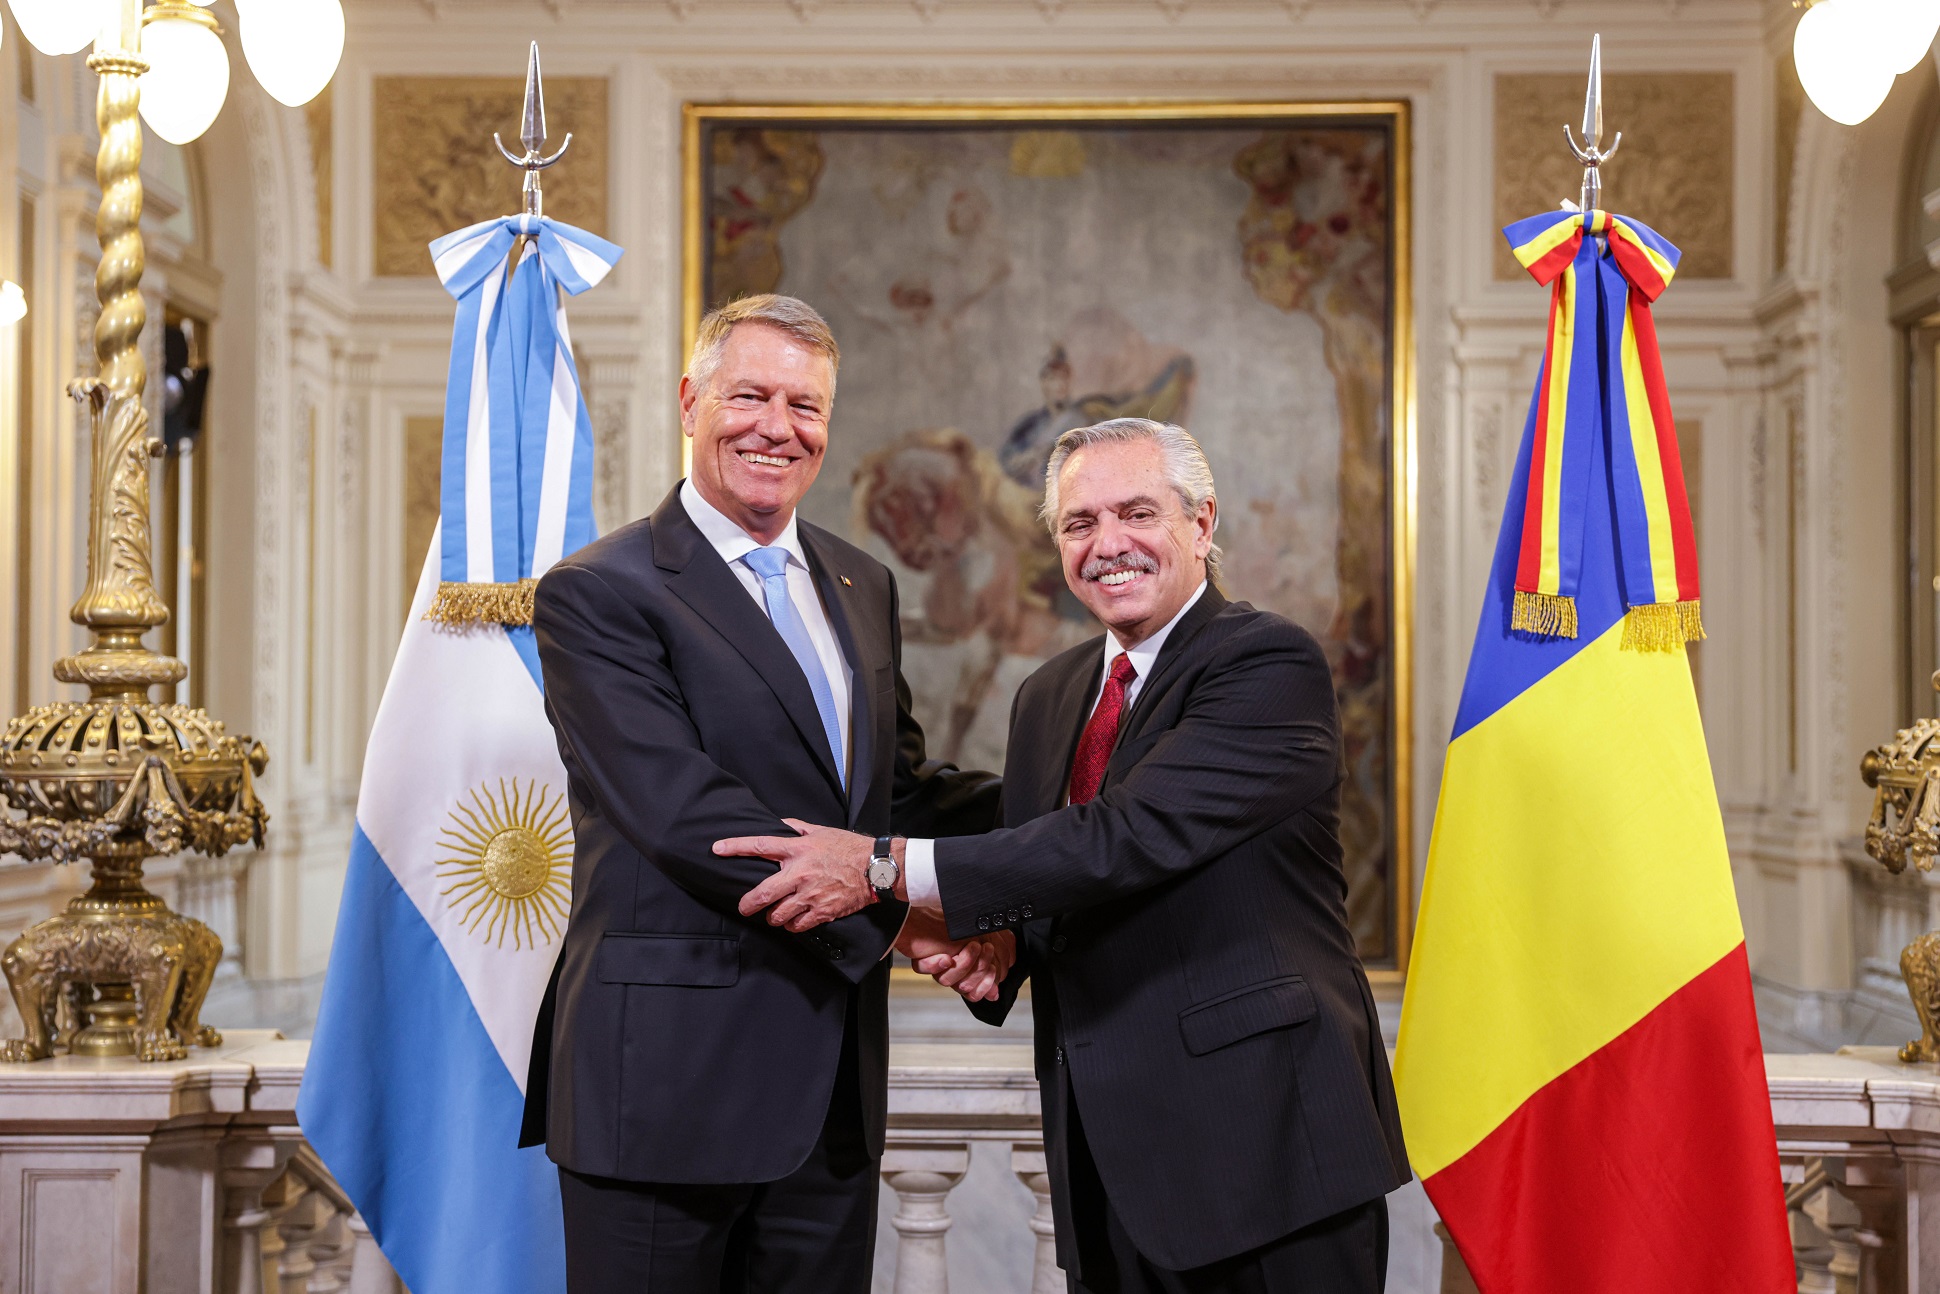 El presidente Alberto Fernández recibió a su par de Rumania, Klaus Iohannis